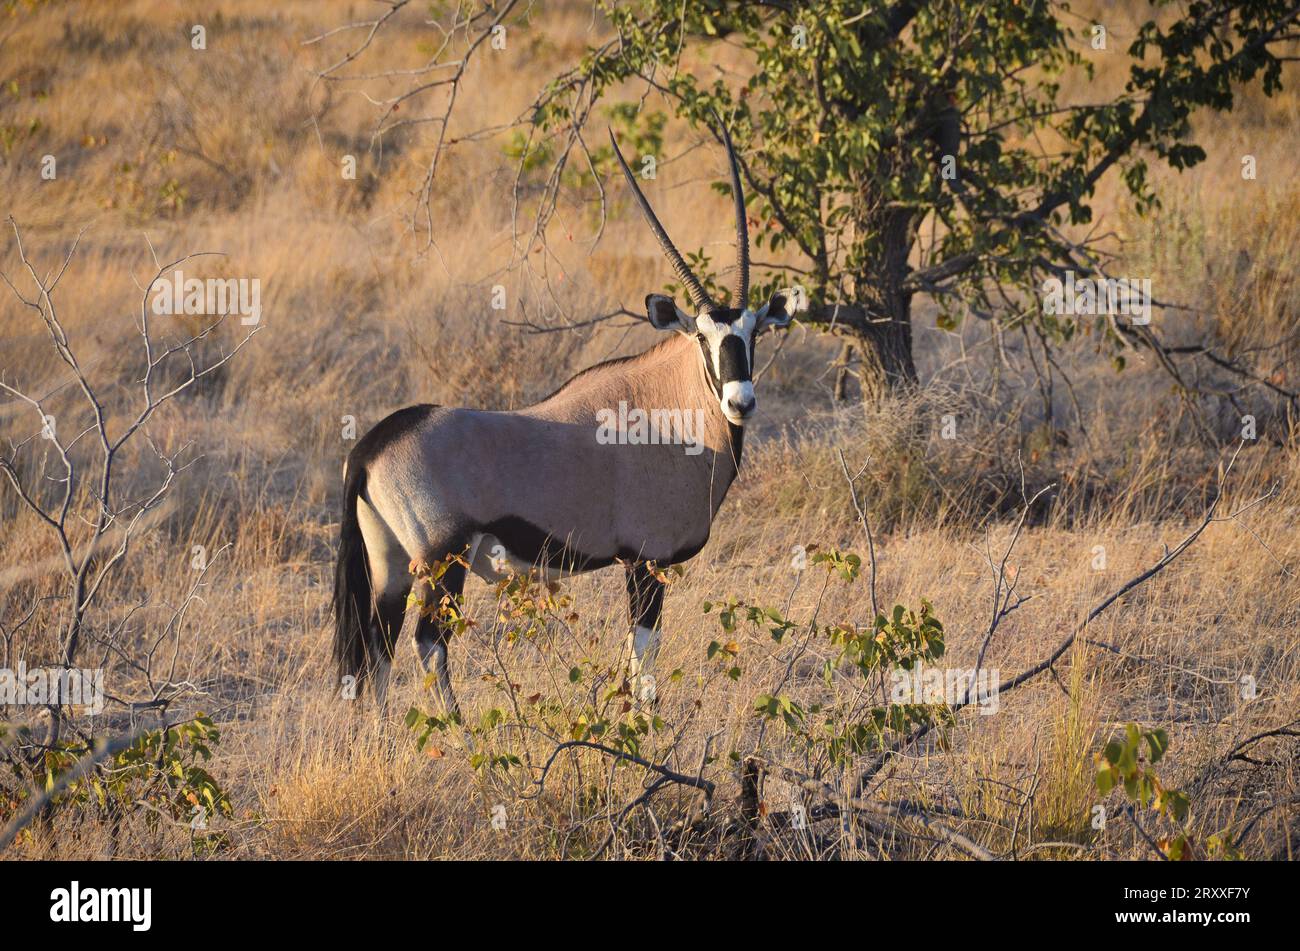 oryx in the etosha national park, namibia Stock Photo